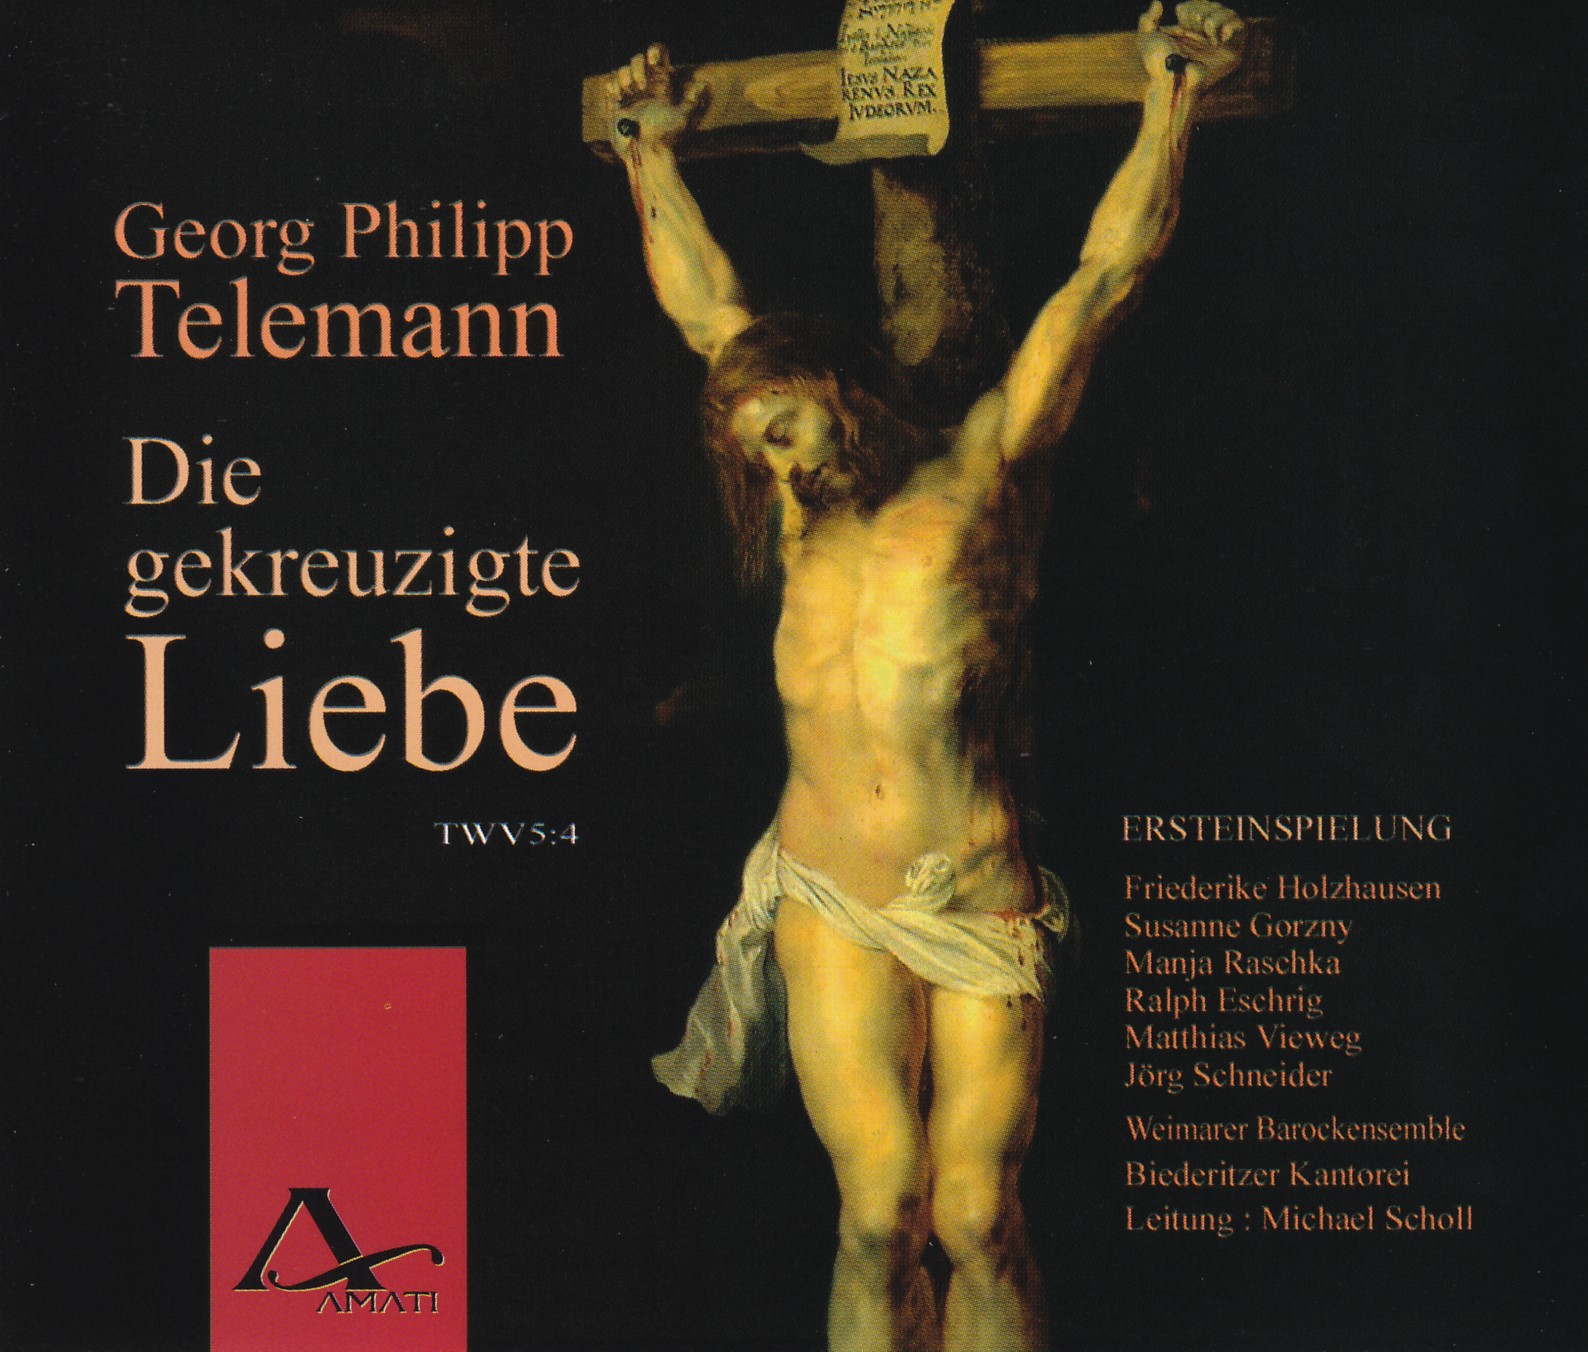 Georg Philipp Telemann  - Die gekreuzigte Liebe